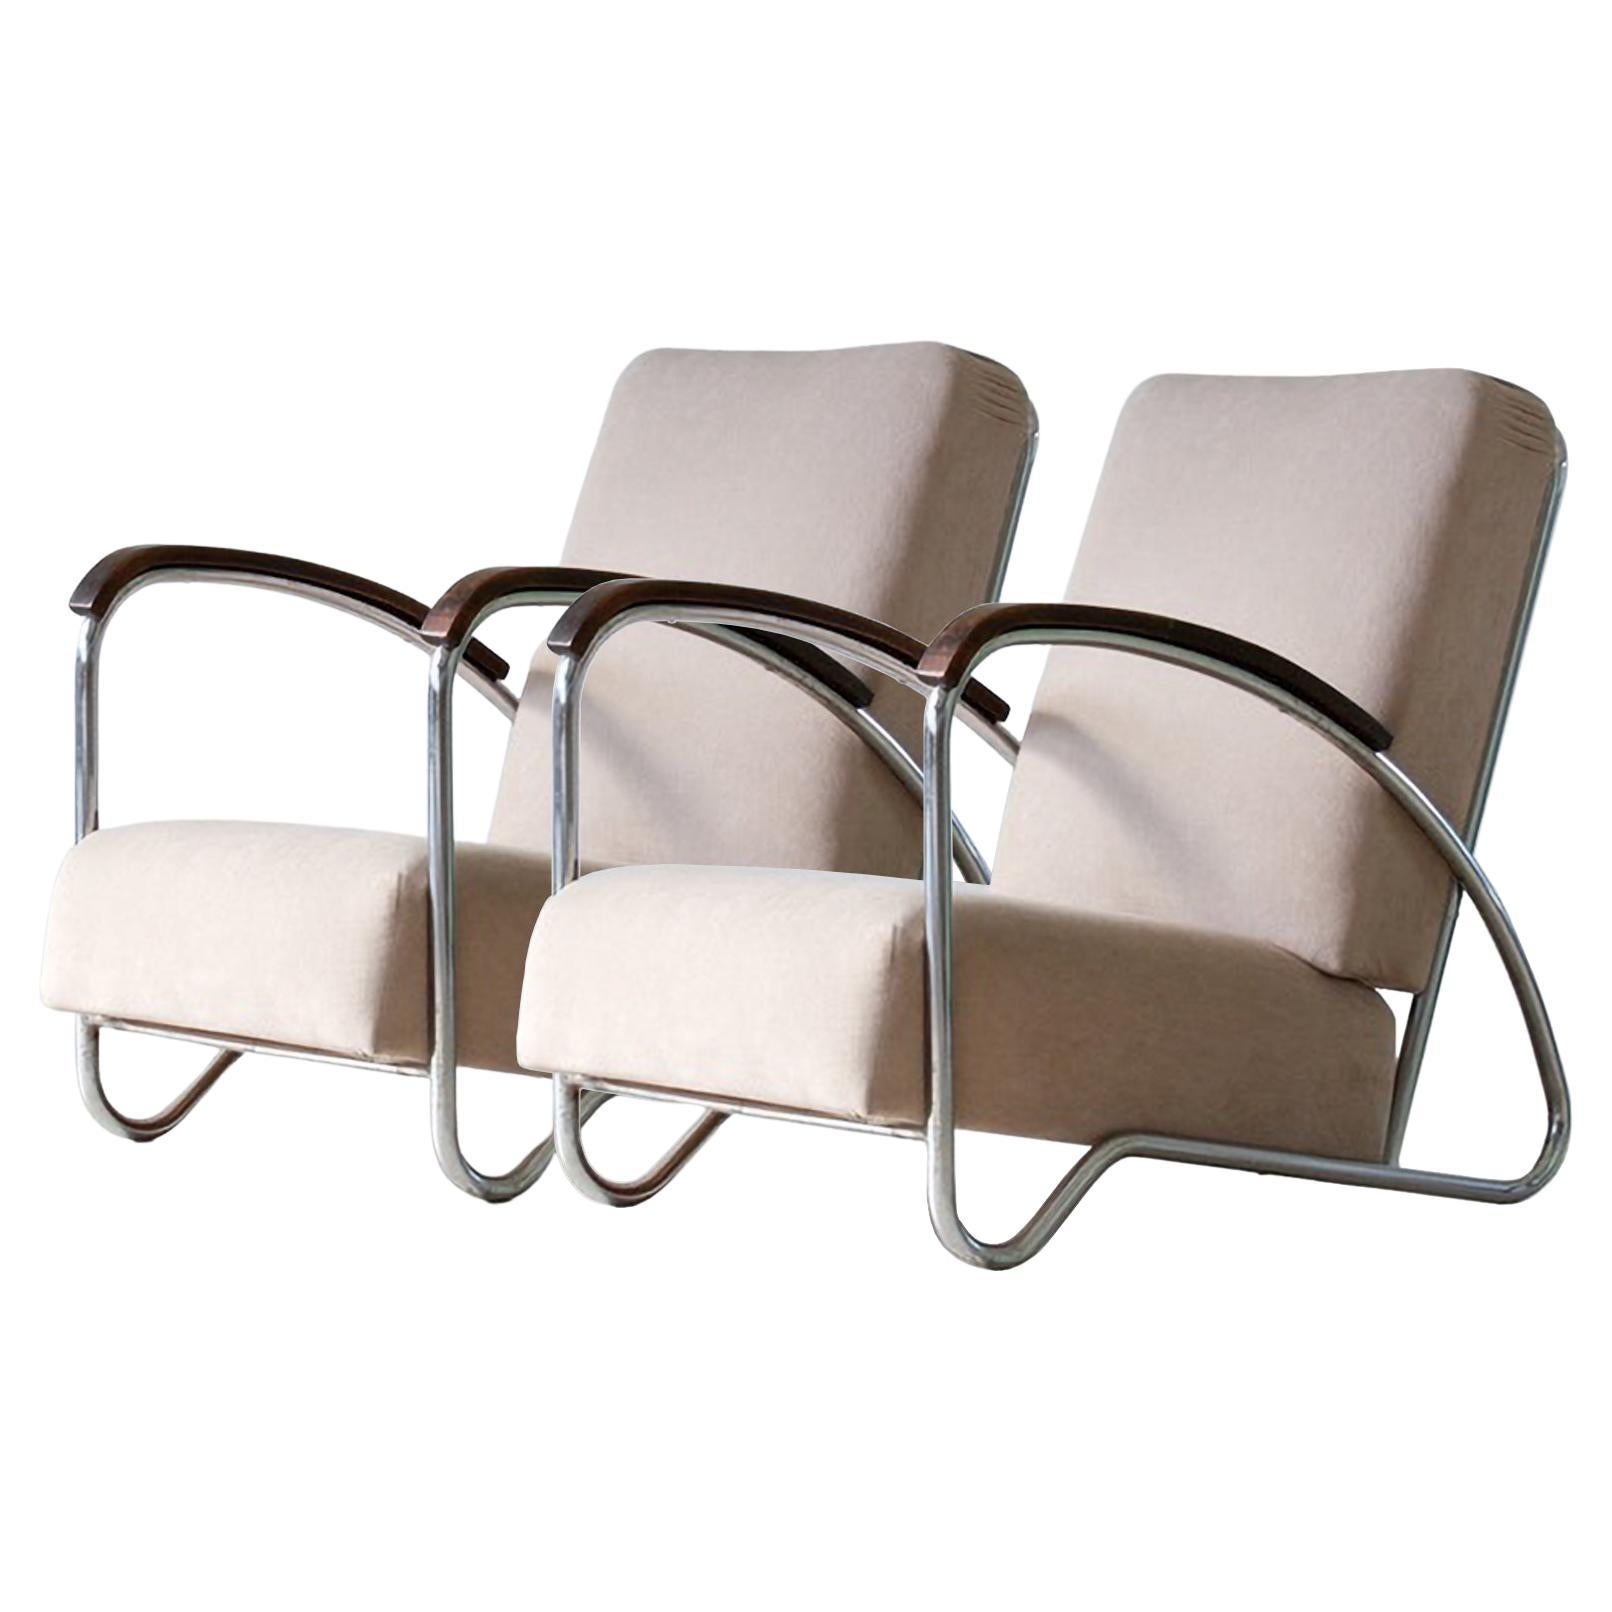 Modernistische Stahlrohr-Sessel, mit Stoff oder Leder bezogen, um 1930